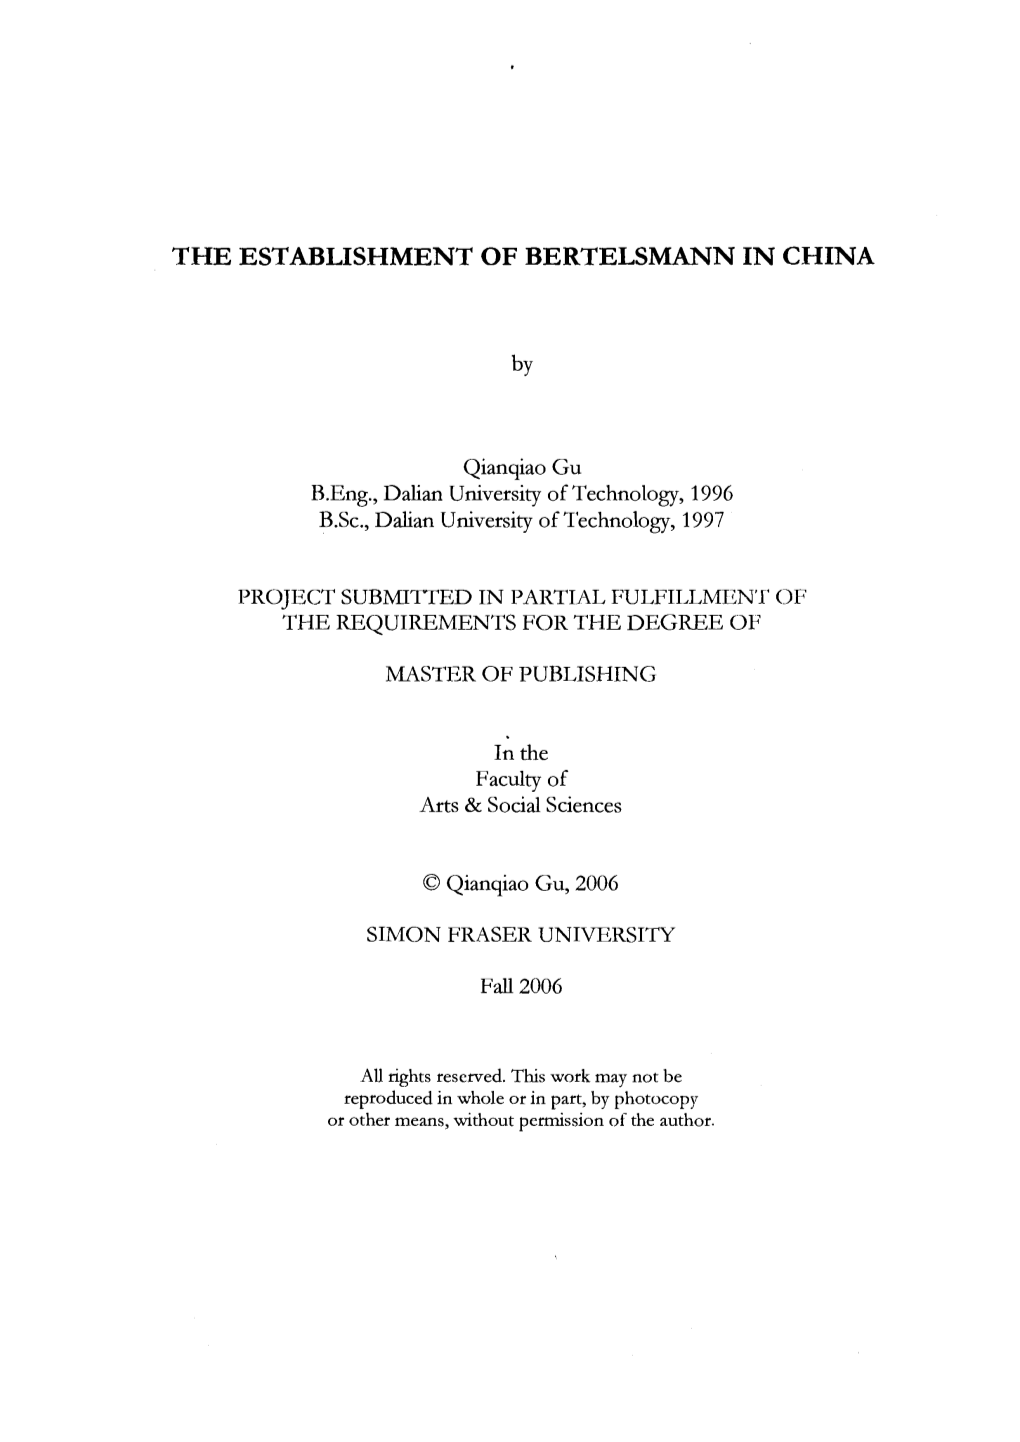 The Establishment of Bertelsmann in China